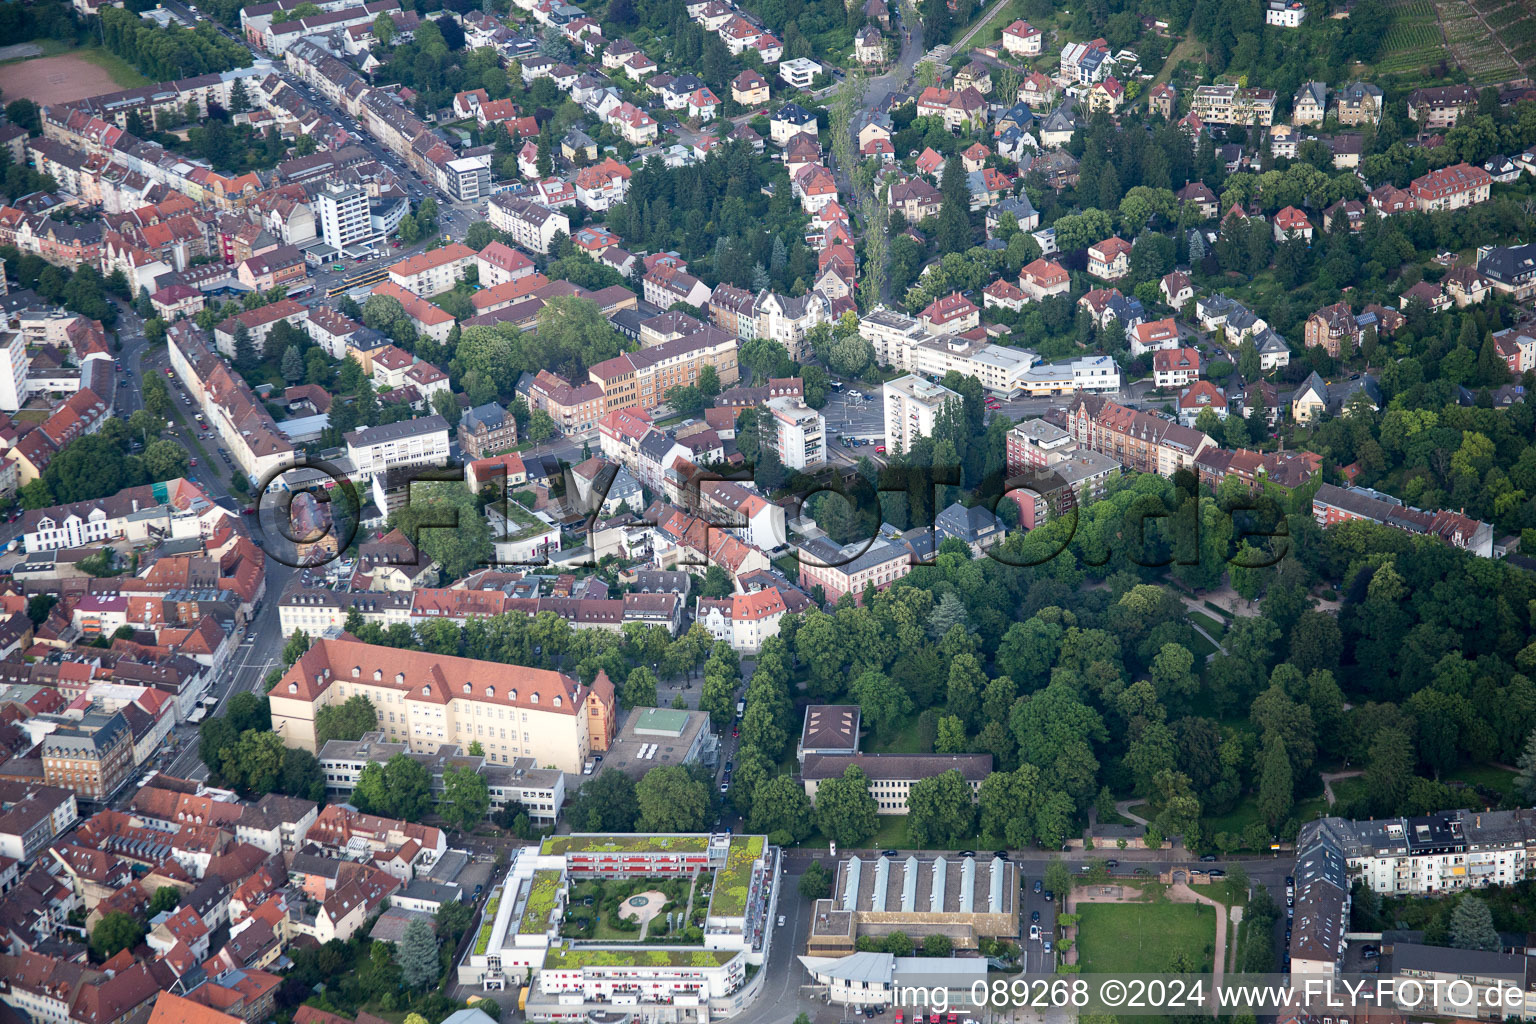 Vue aérienne de Zone d'aménagement de la friche industrielle, ancien site Pfaff devenu usine spatiale à le quartier Durlach in Karlsruhe dans le département Bade-Wurtemberg, Allemagne